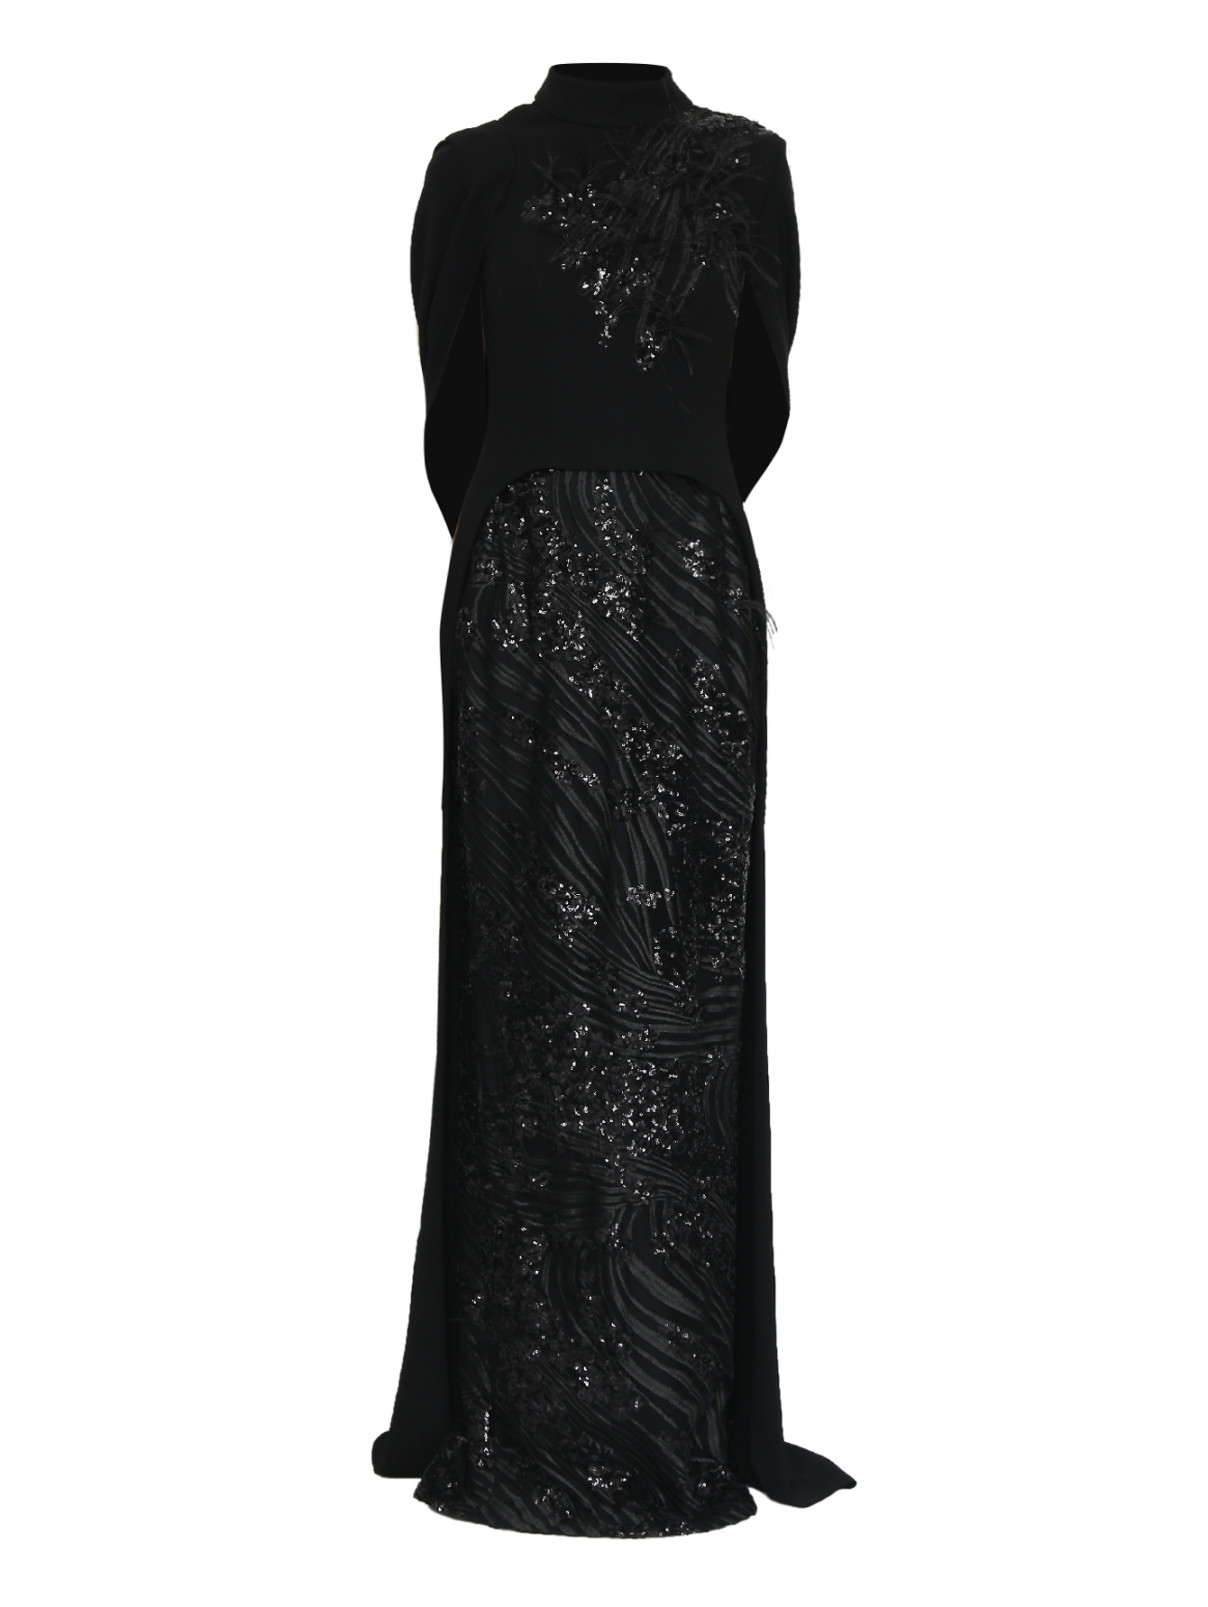 платье-макси из сетки с вышивкой пайетками и перьями Gaby Charbachi  –  Общий вид  – Цвет:  Черный